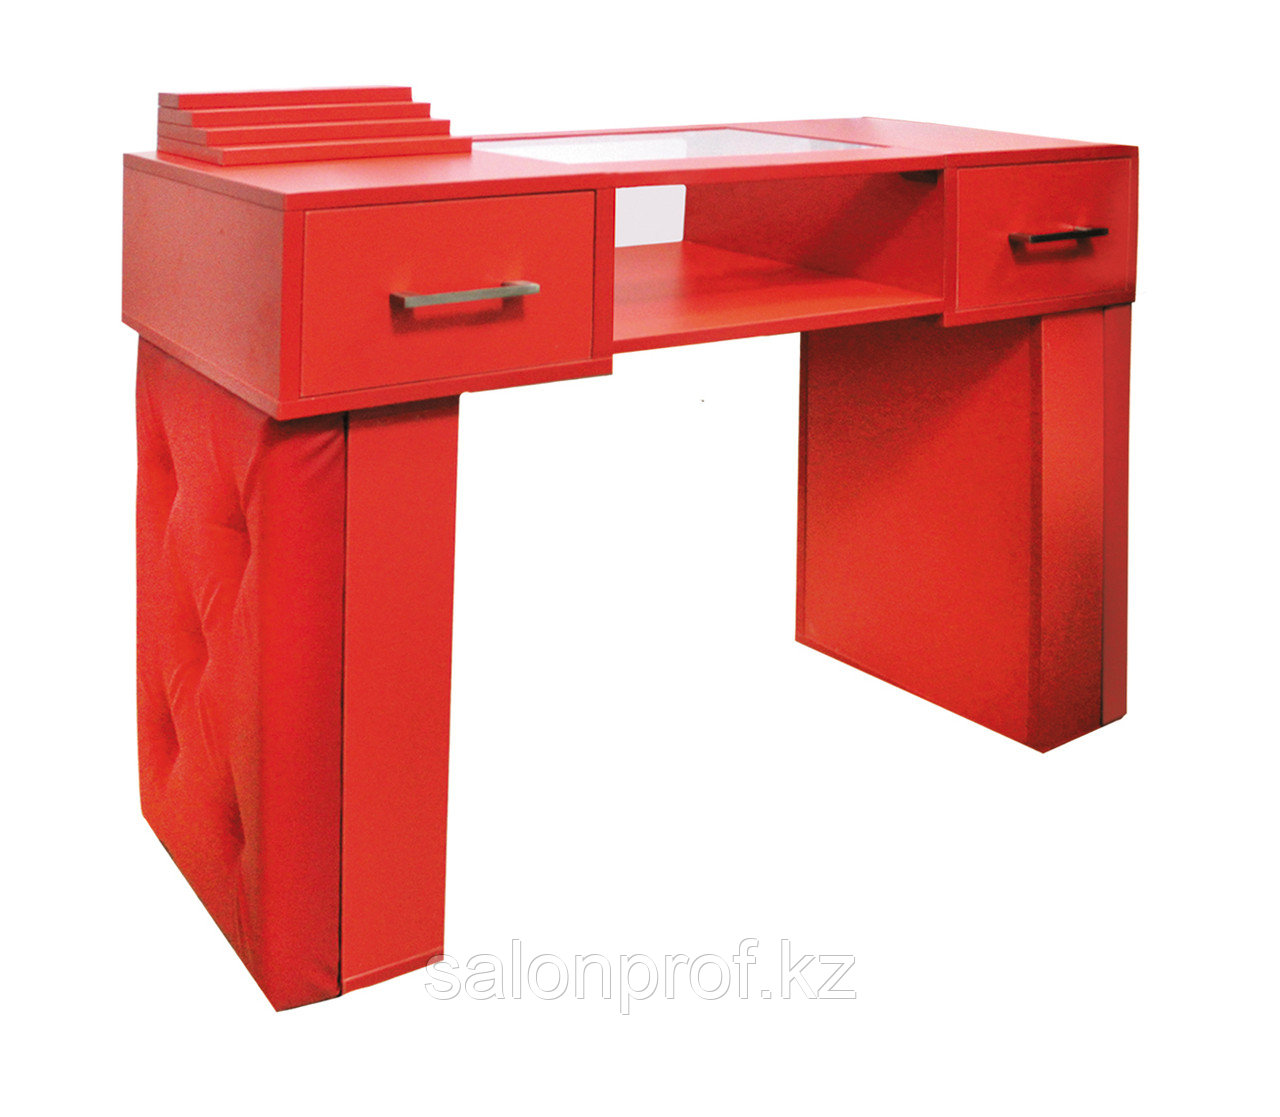 AS-11 Стол маникюрный с двумя задвижками/двухъярусный (красный)